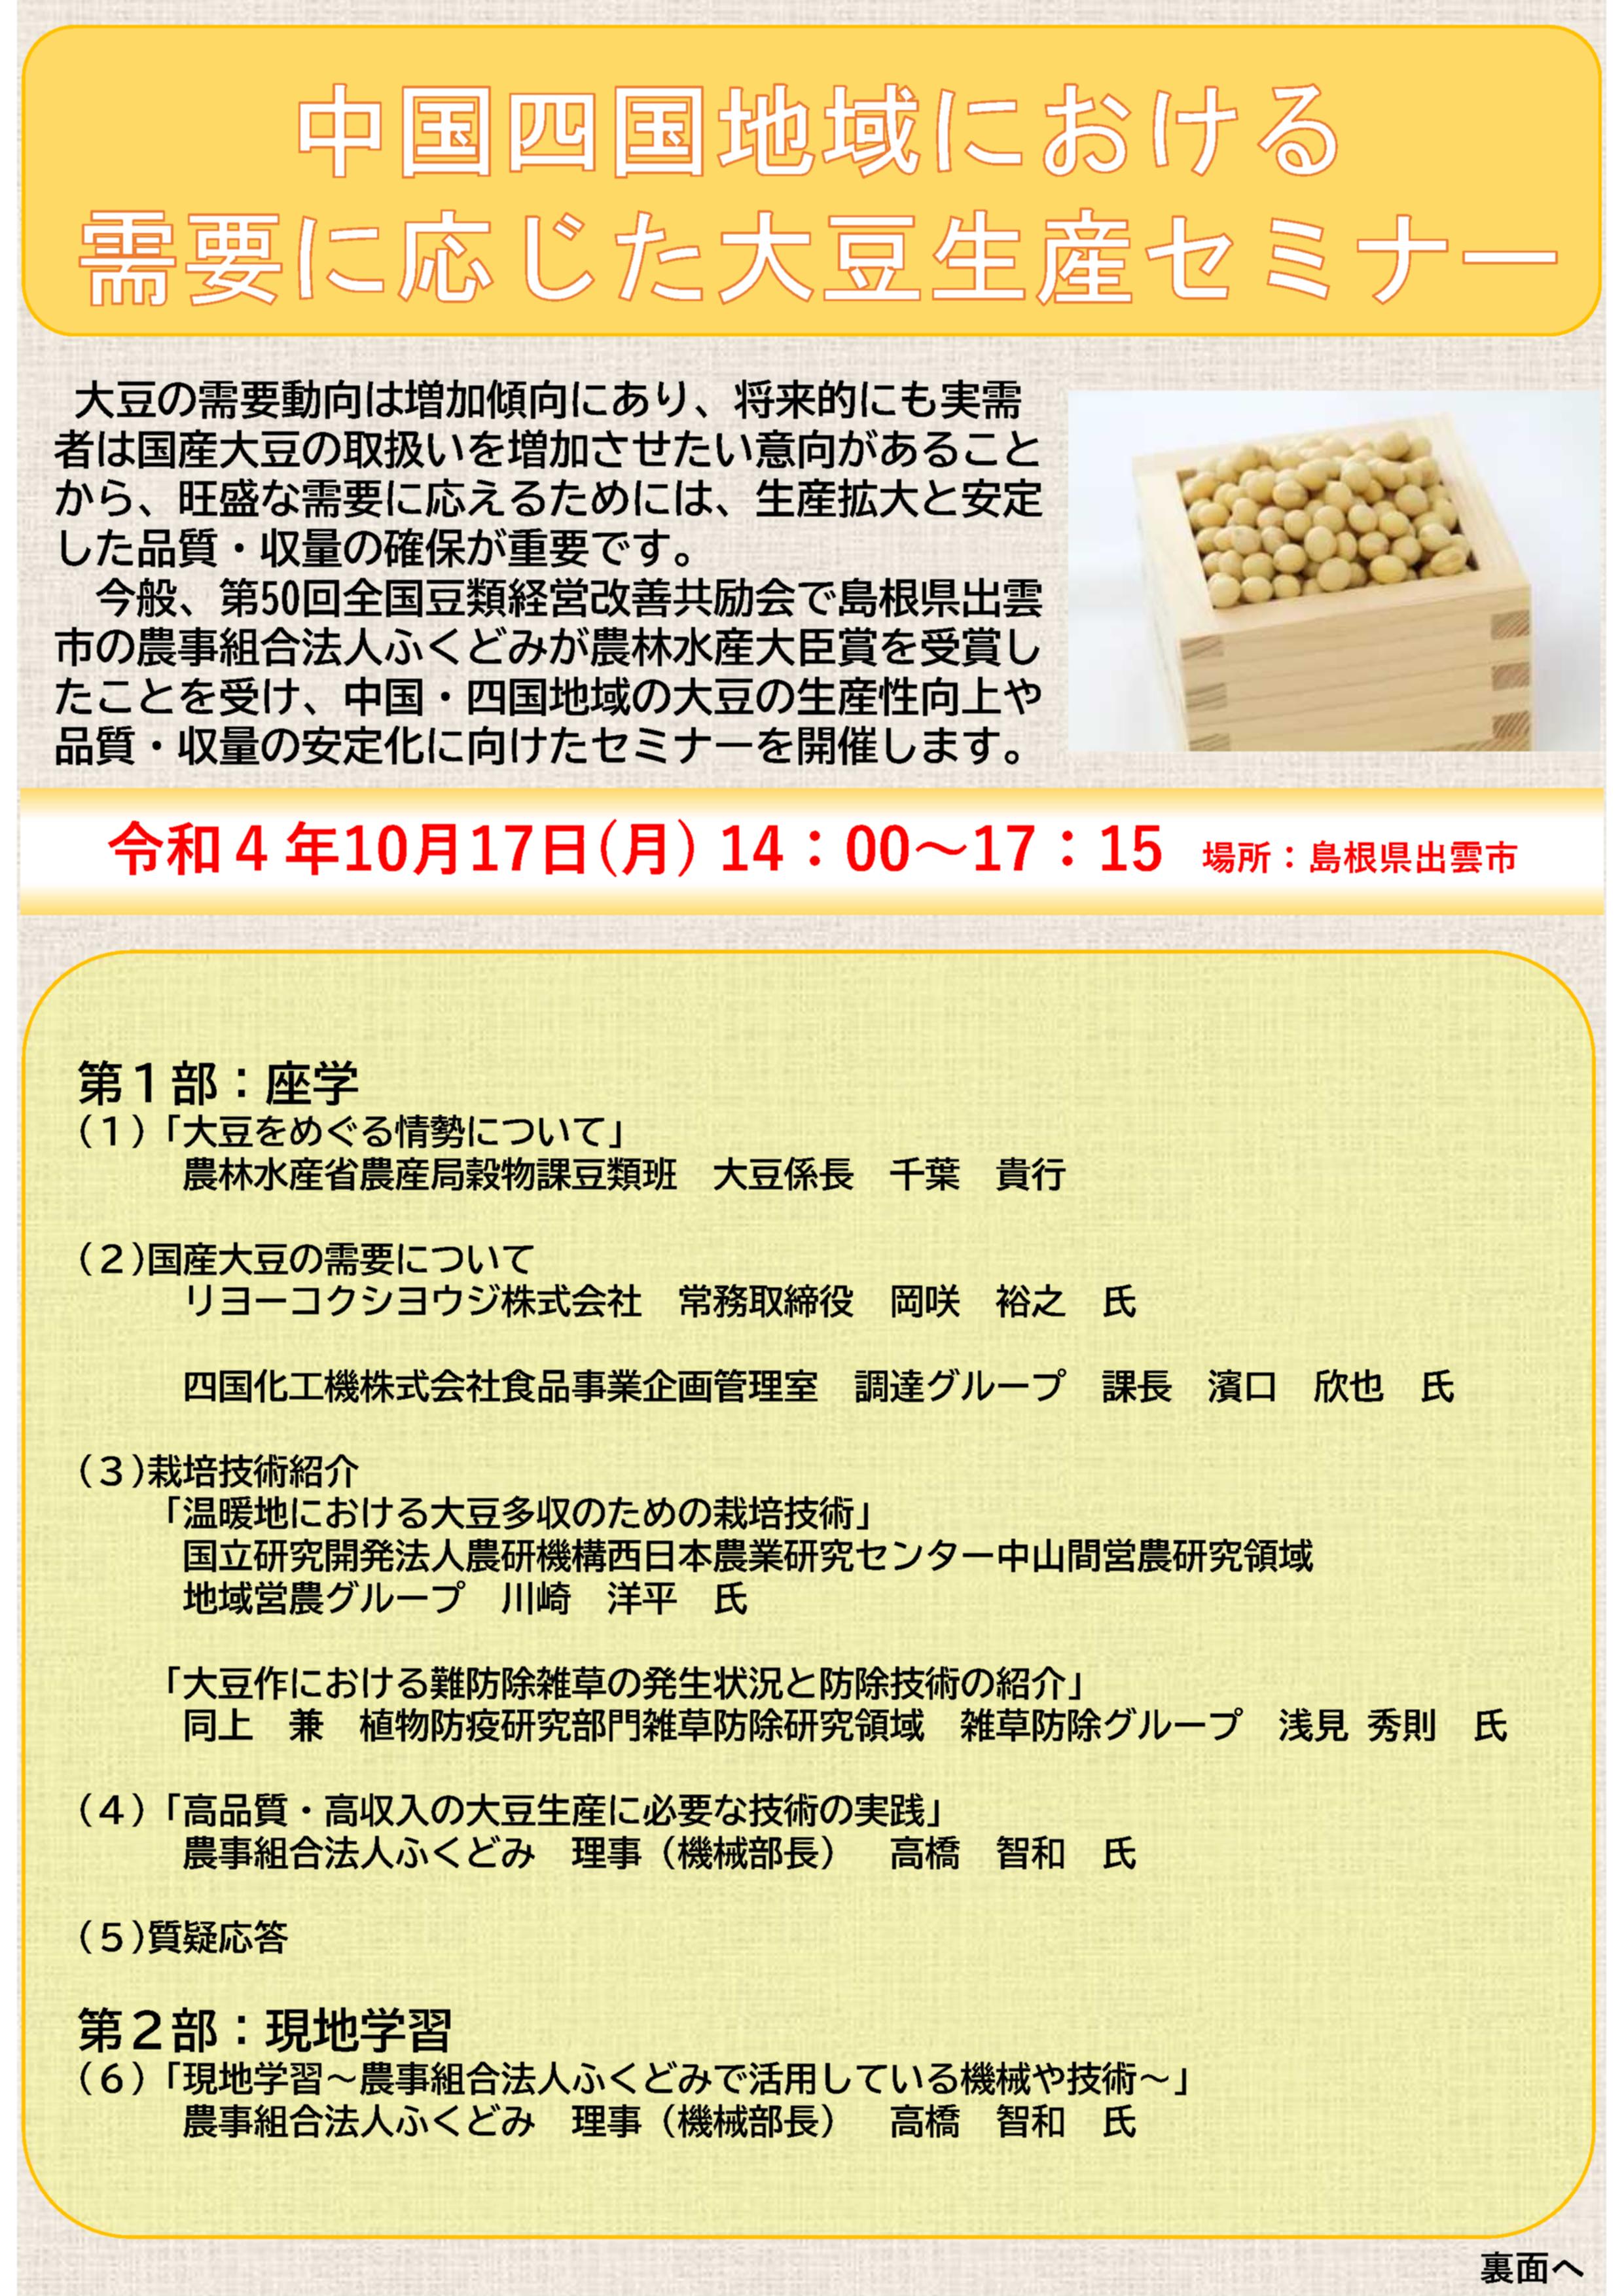 【参加者募集】 中国四国地域における需要に応じた大豆生産セミナーを開催します！（先着40名）